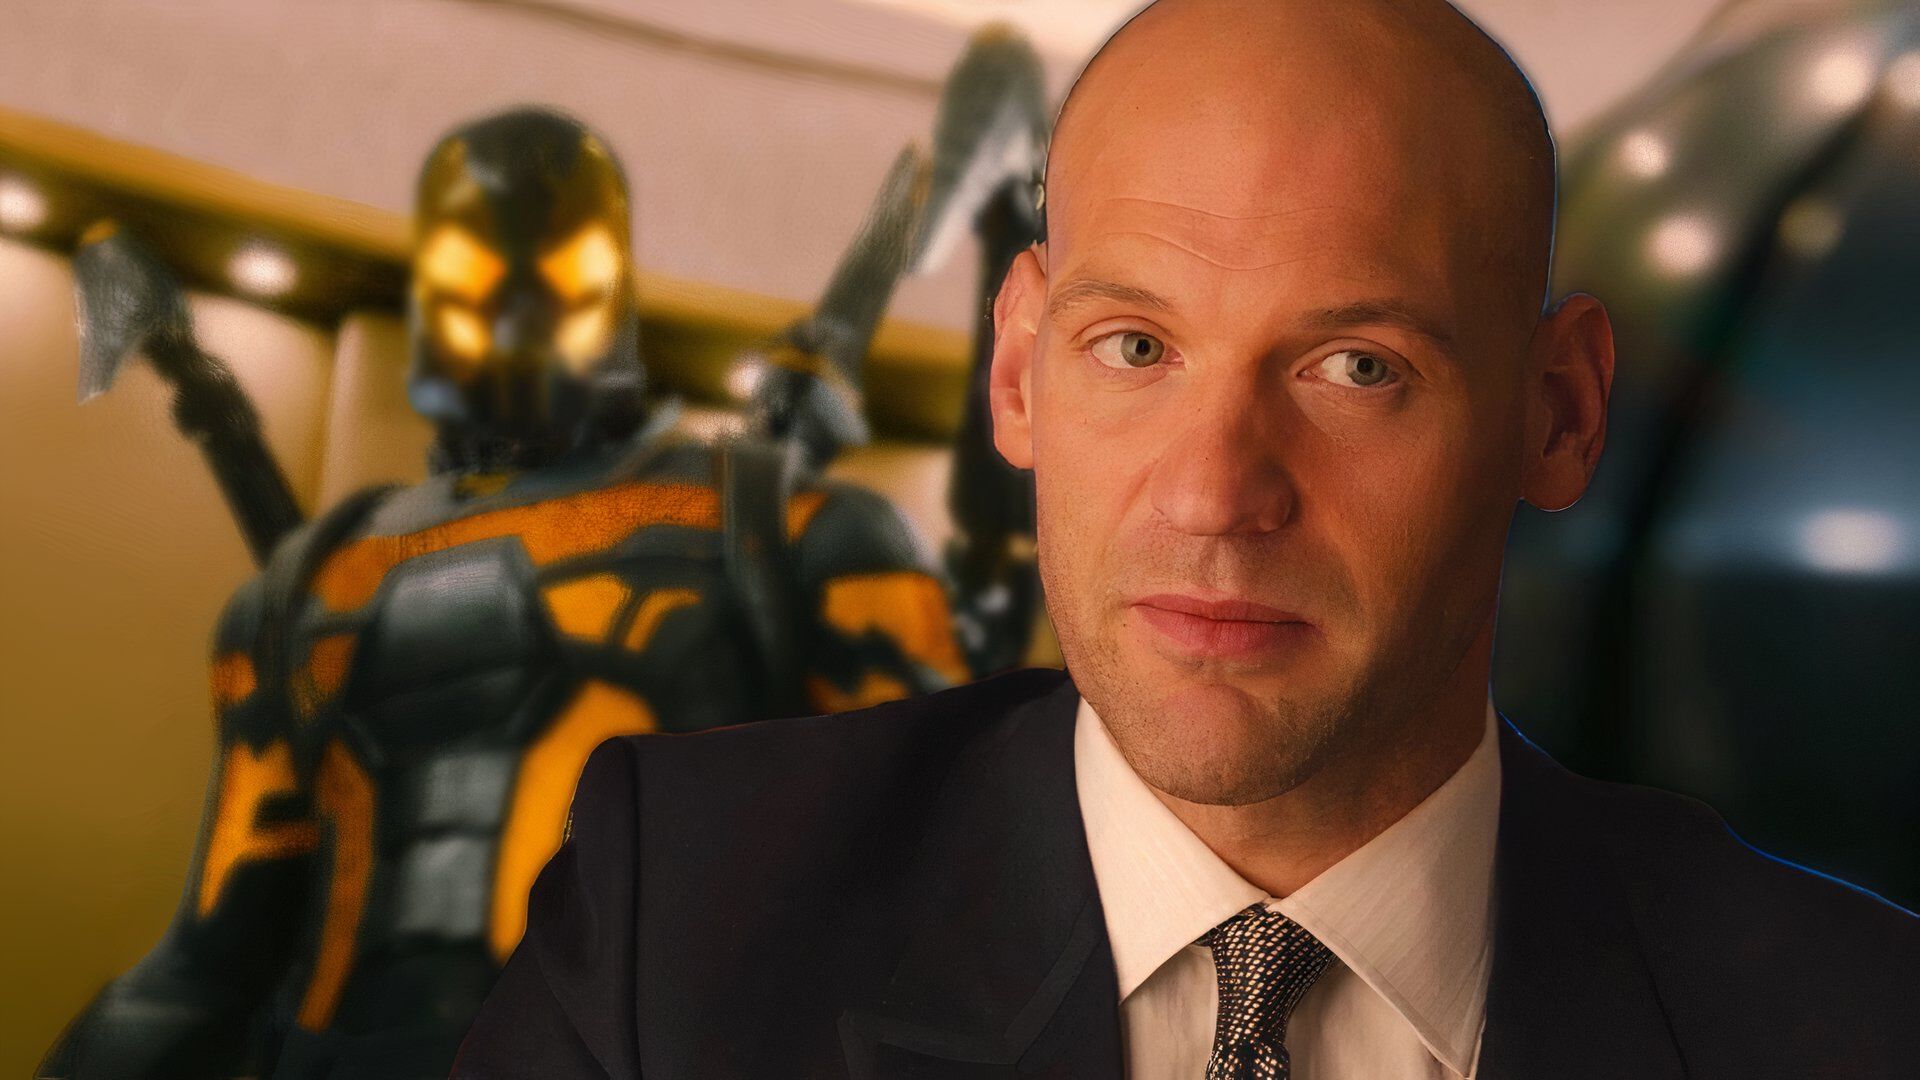 Marvel Star révèle pourquoi son fils refuse de regarder le film Ant-Man du MCU